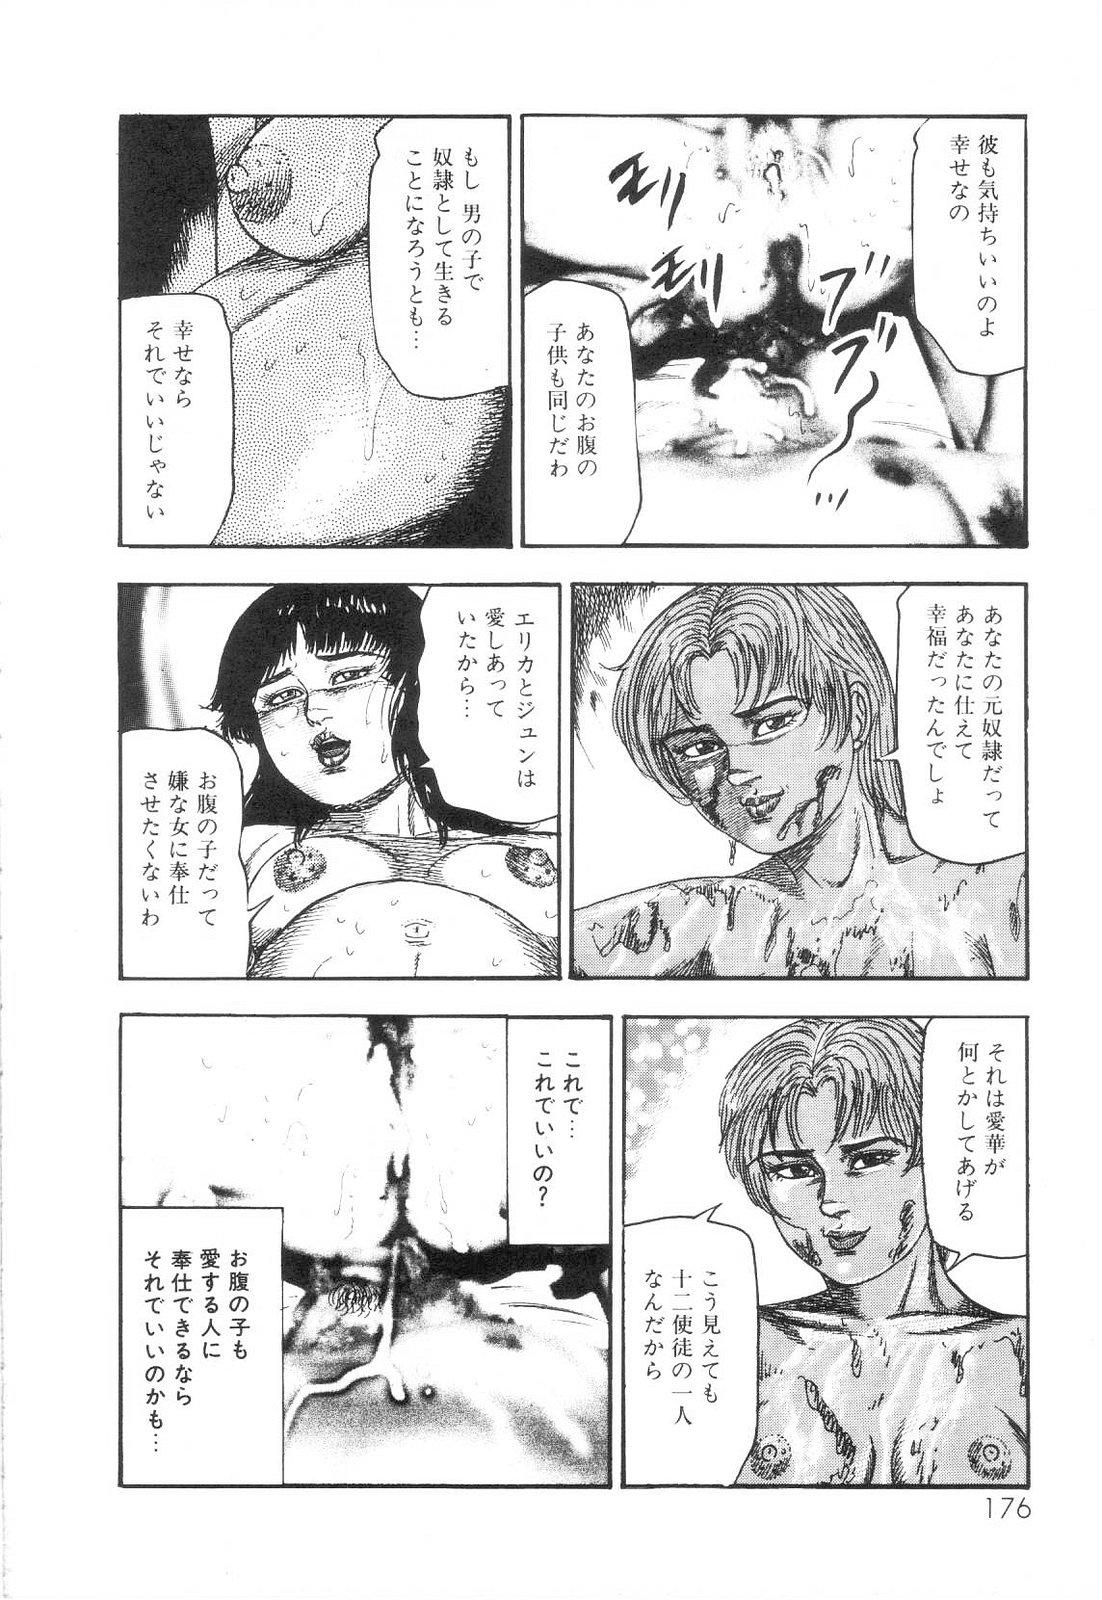 Shiro no Mokushiroku Vol. 6 - Juuai Erika no Shou 177